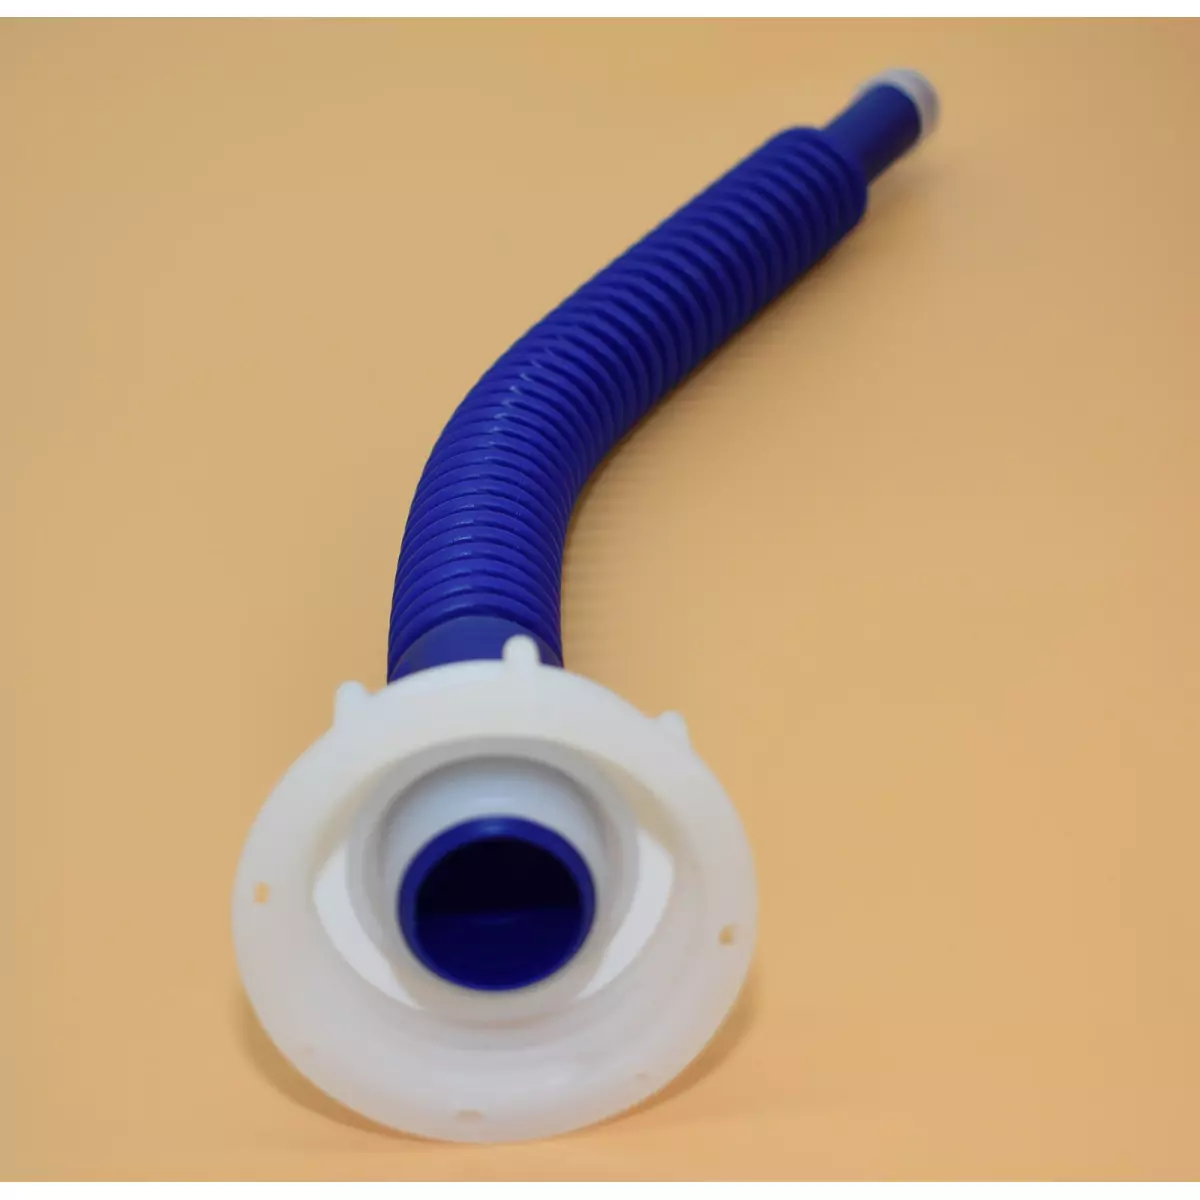 Bec de vidange flexible bleu longueur 38cm avec écrou femelle S60x6 (din 61) - sortie 20mm